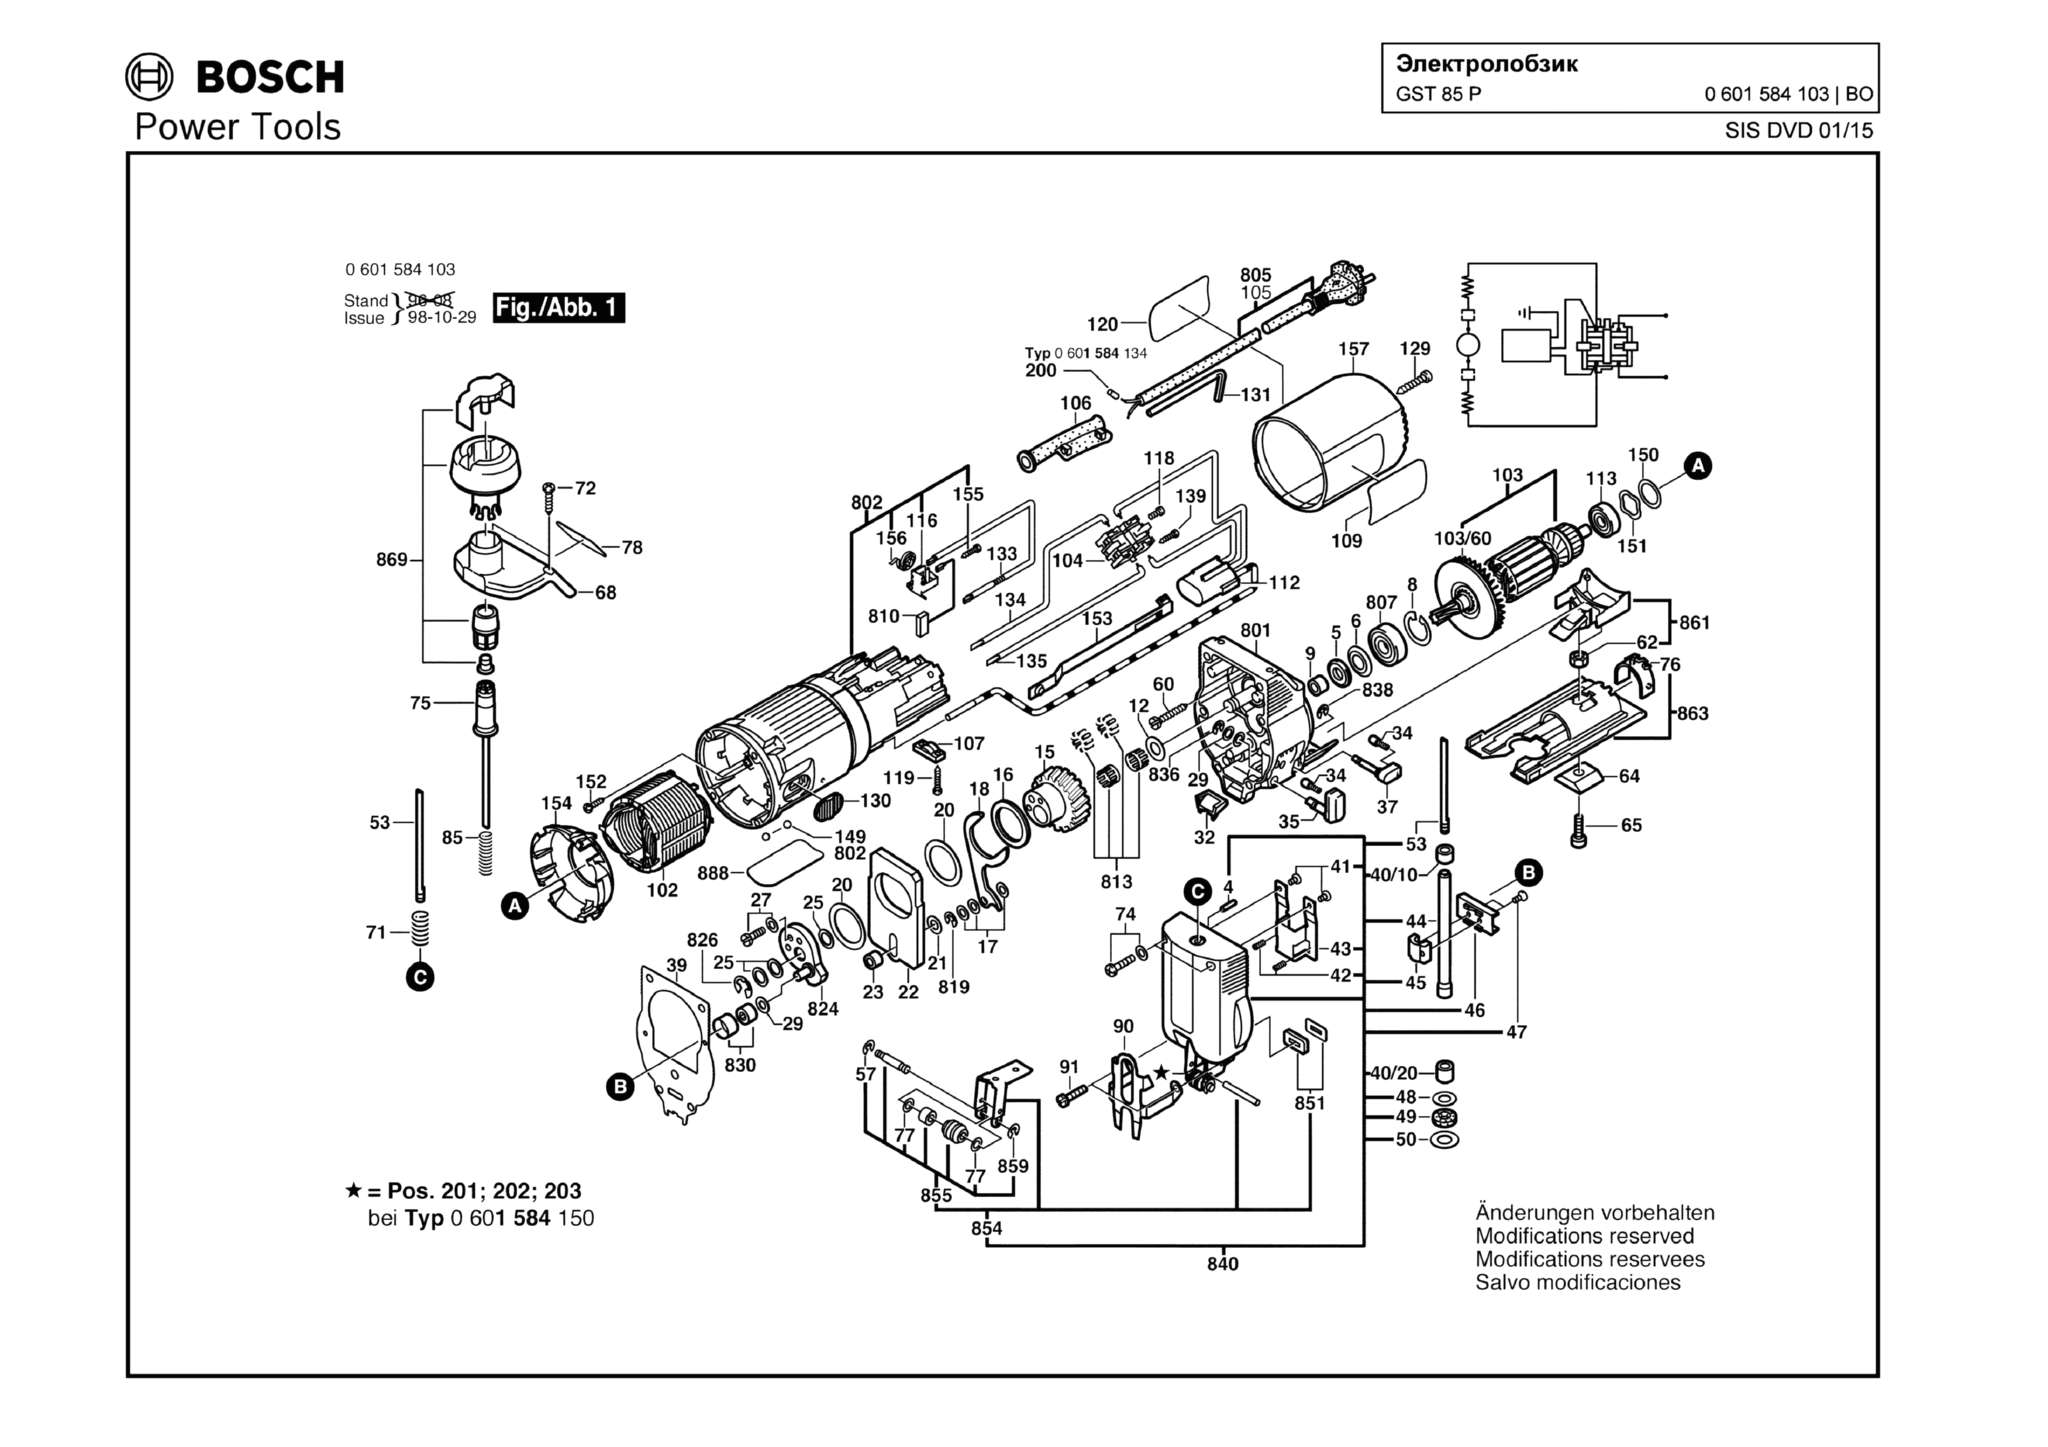 Запчасти, схема и деталировка Bosch GST 85 P (ТИП 0601584103)